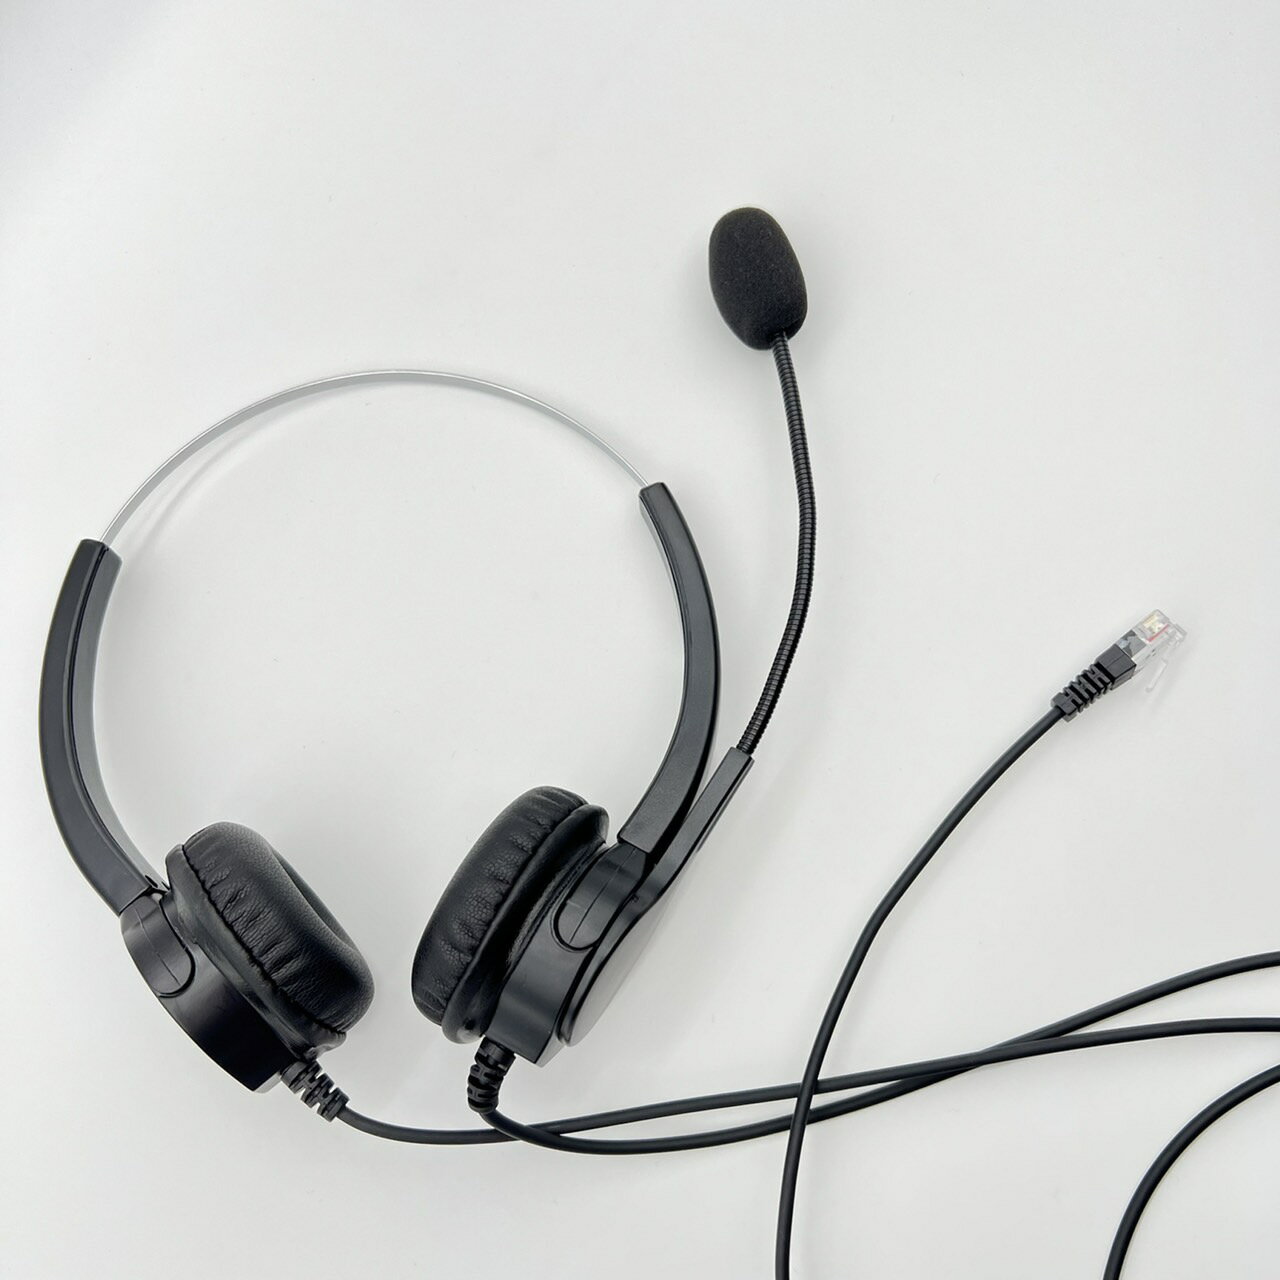 雙耳耳機麥克風 國際牌Panasonic話機專用 KX-T7730 辦公室電話耳機 商務辦公適用